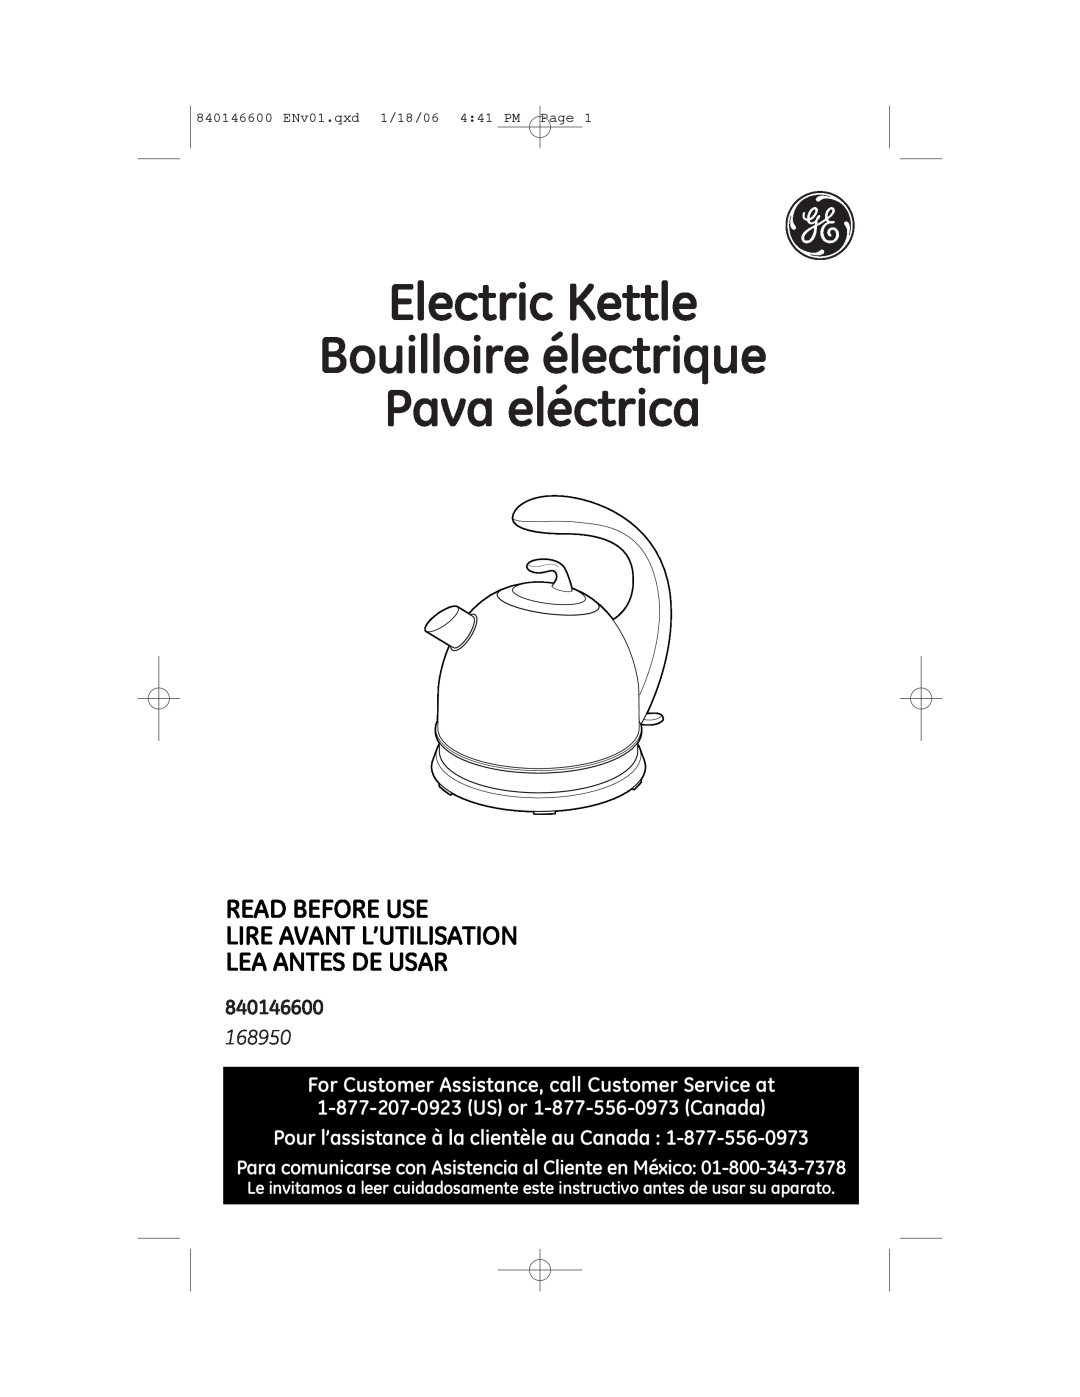 GE 168950 manual 840146600, Electric Kettle Bouilloire électrique, Pava eléctrica, Lea Antes De Usar 